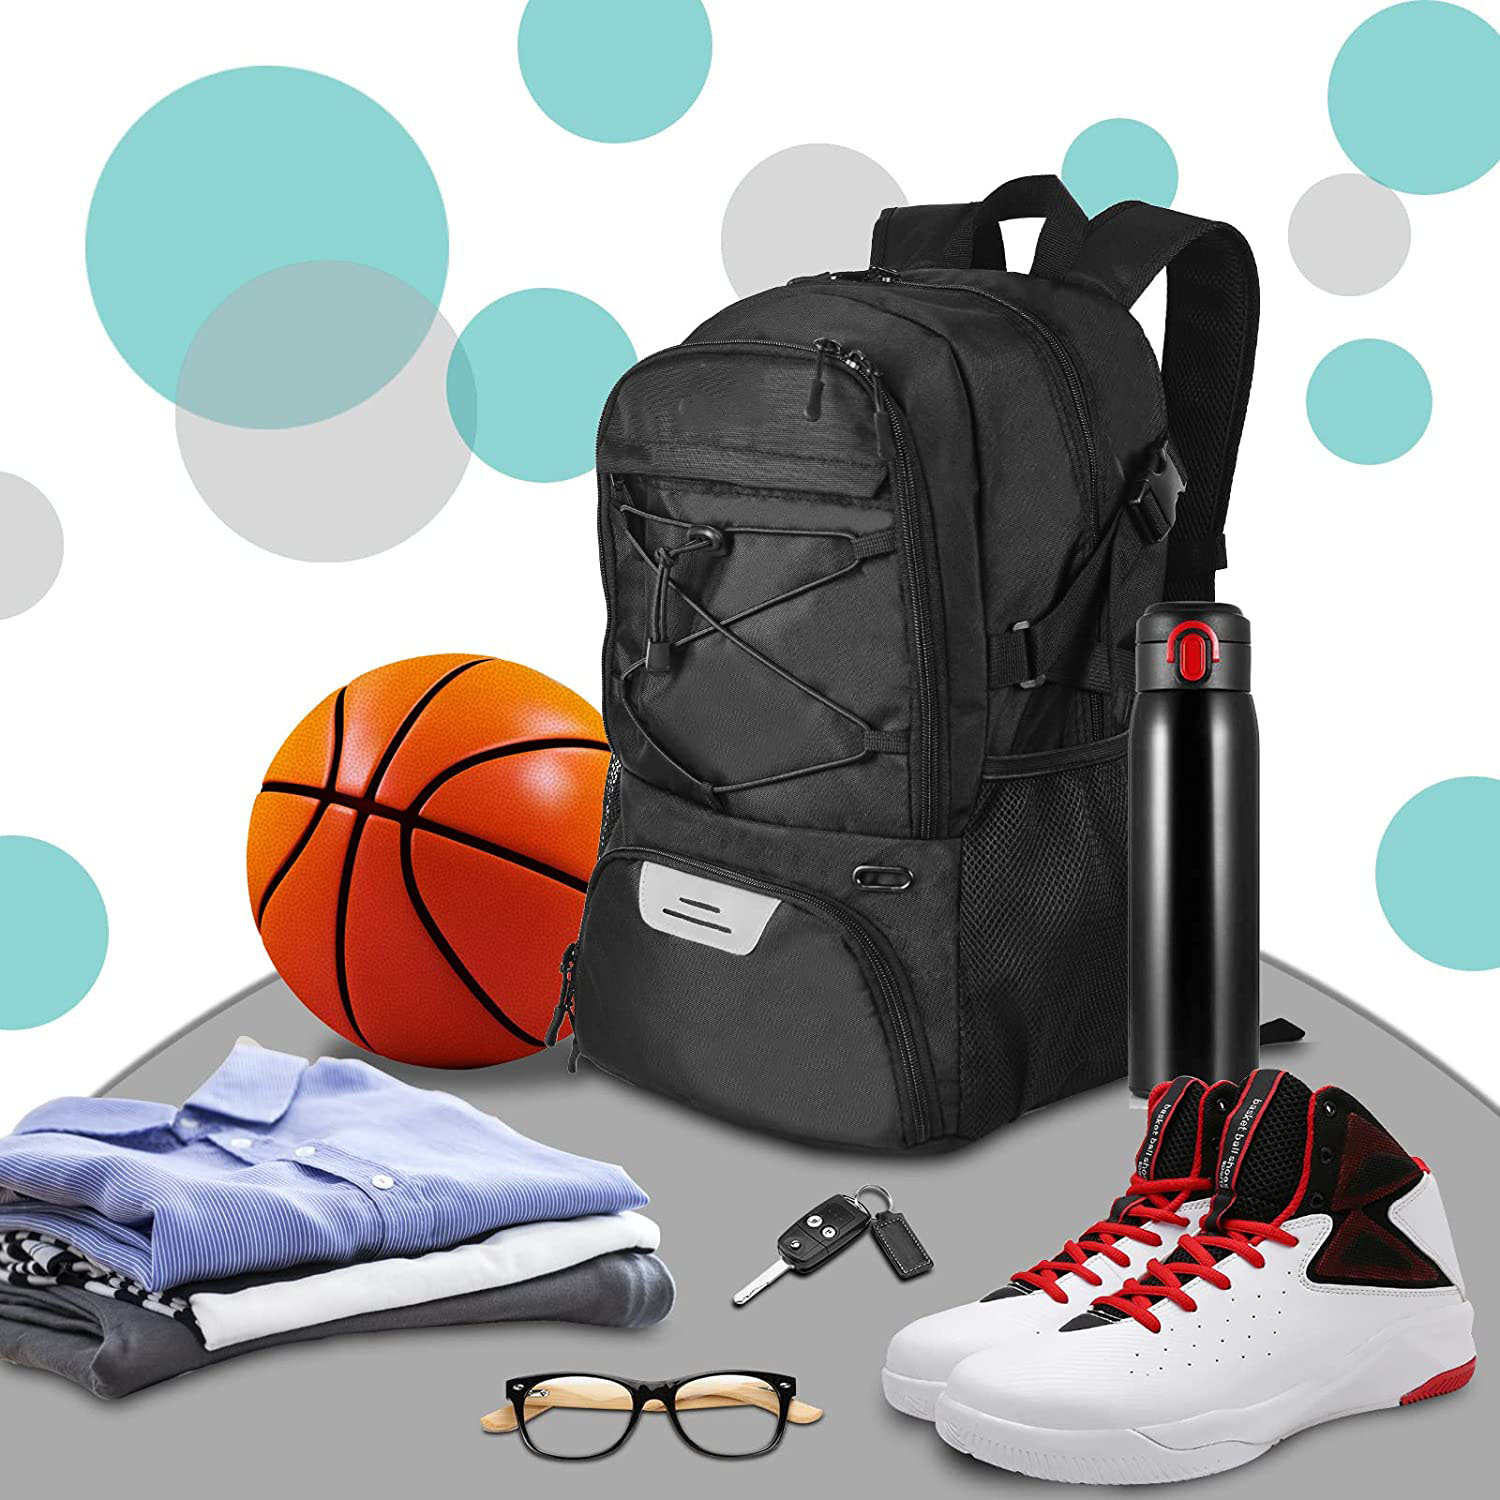 Вялікая спартыўная сумка на заводзе, асобны трымальнік для мяча, аддзяленне для абутку, падарожны валейбол, футбол, трэнажорная зала, баскетбольны заплечнік